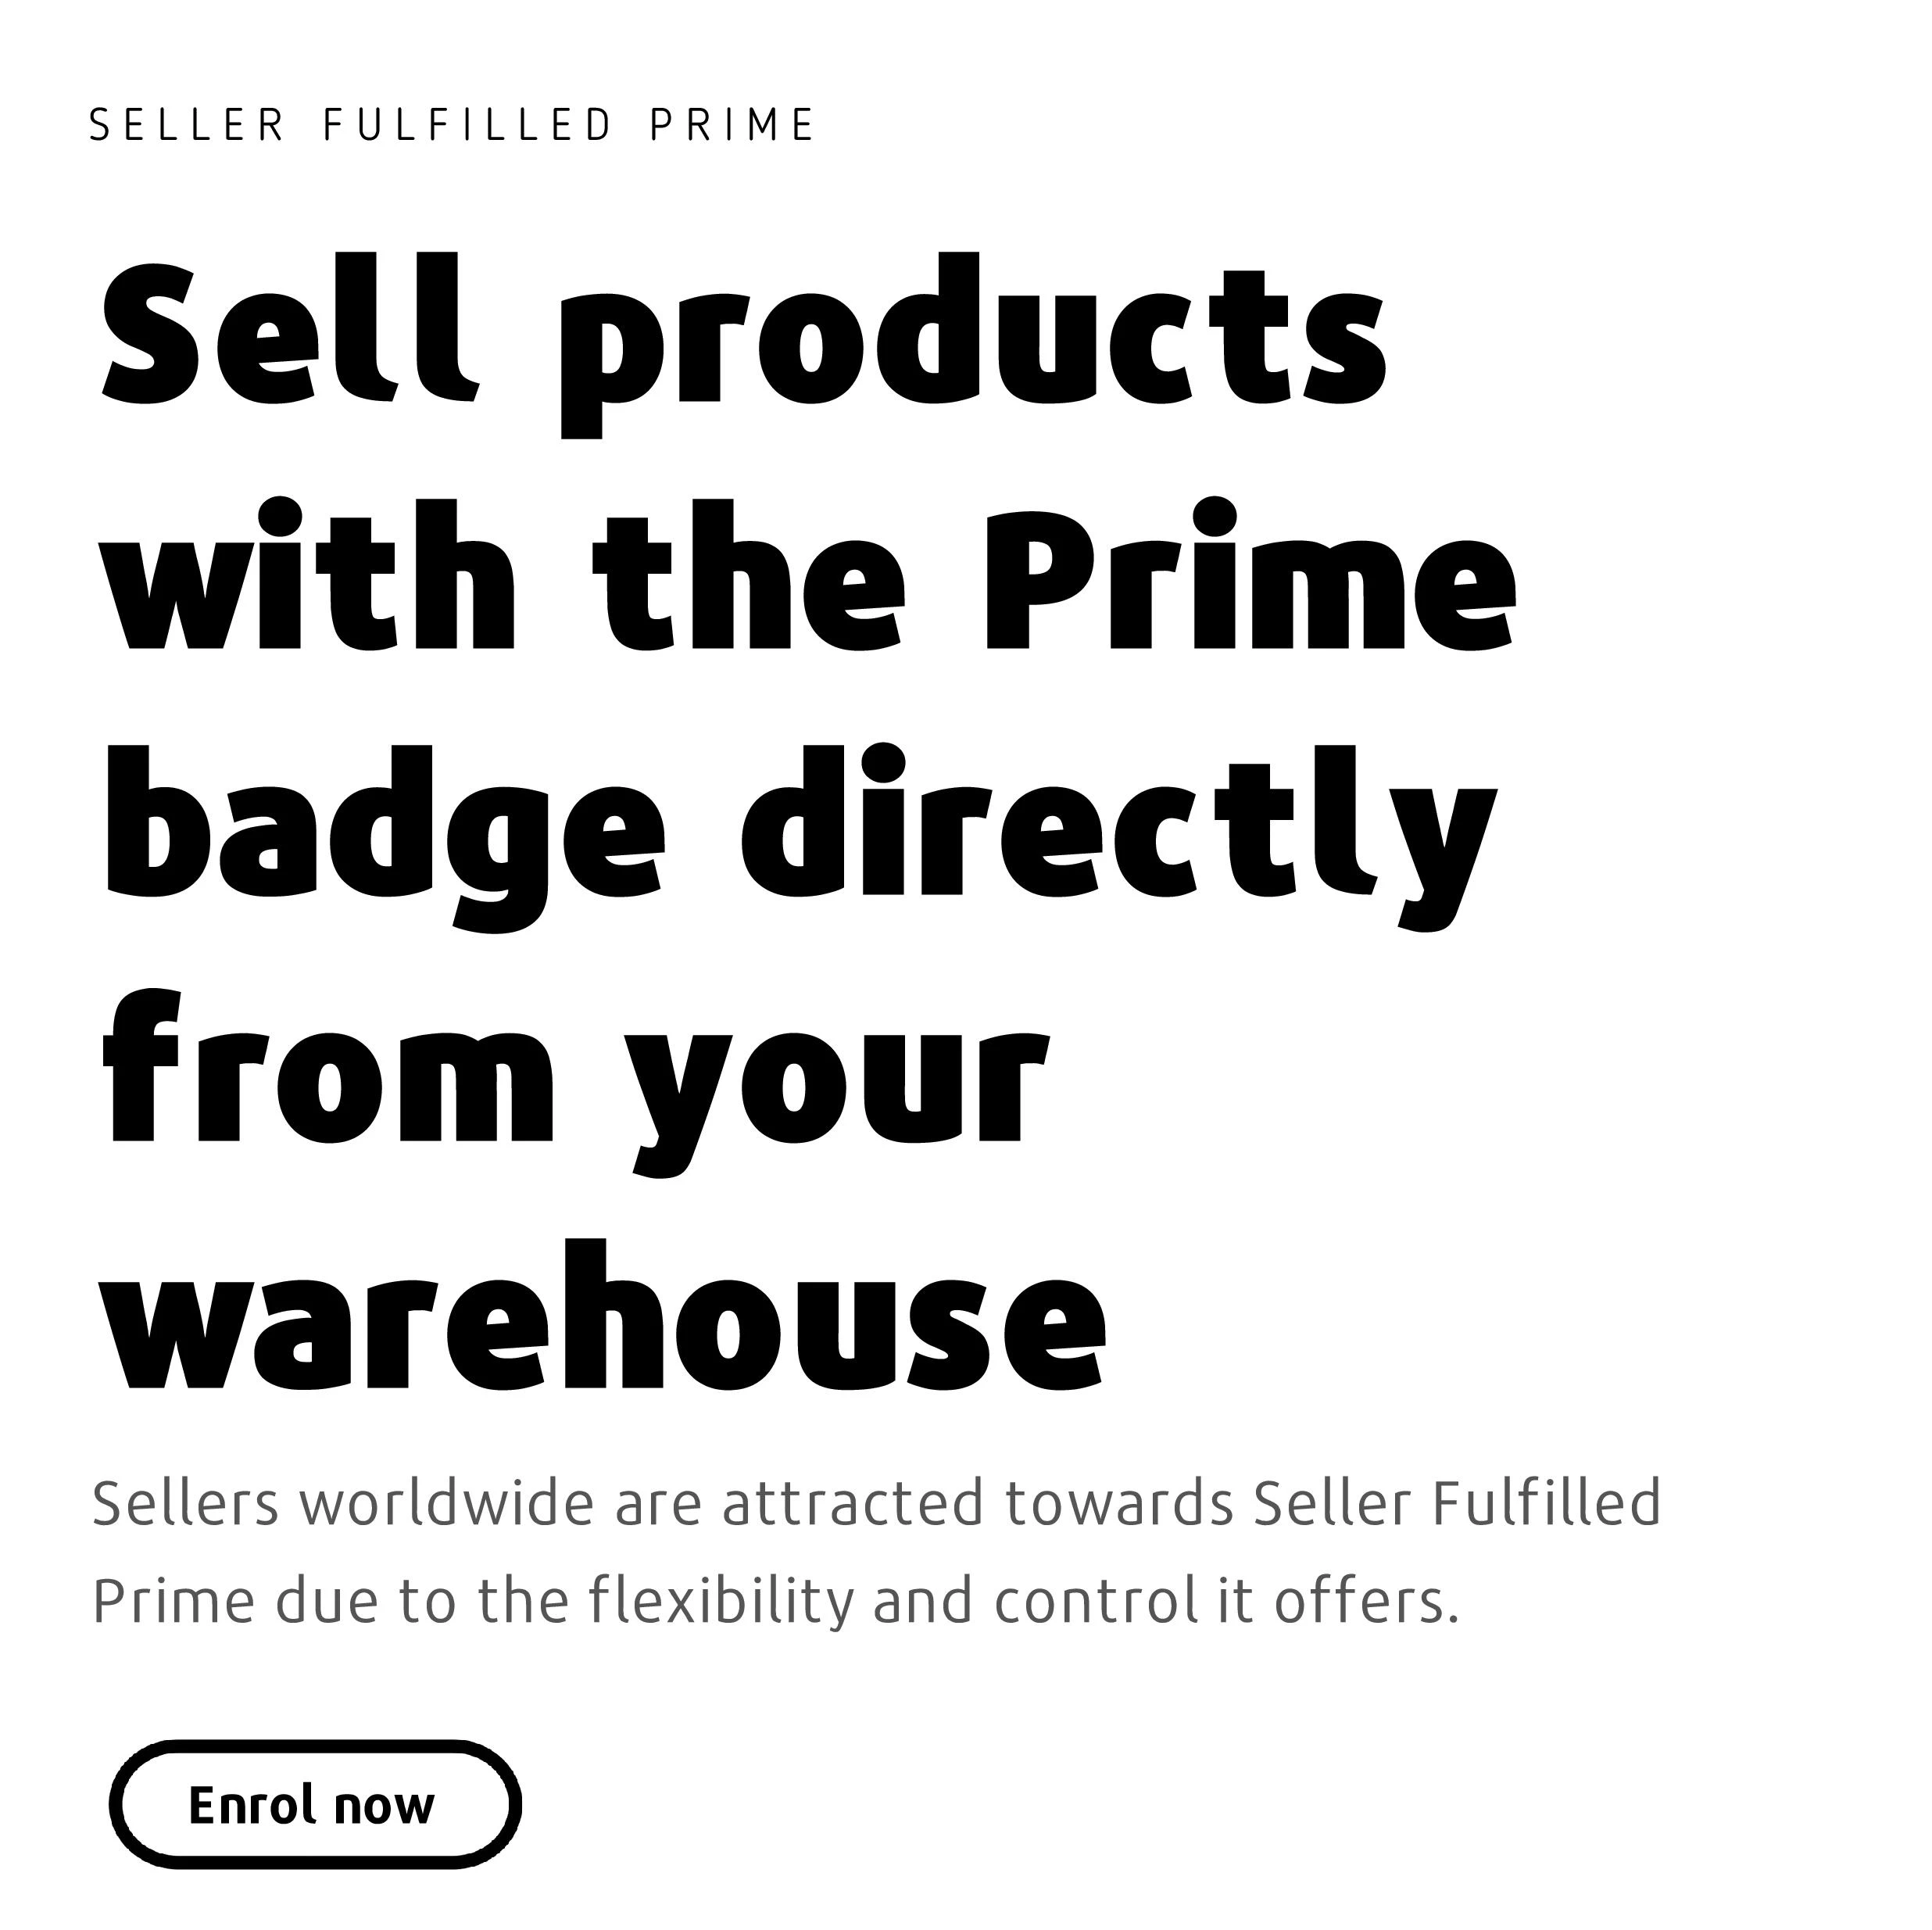 Seller Fulfilled Prime